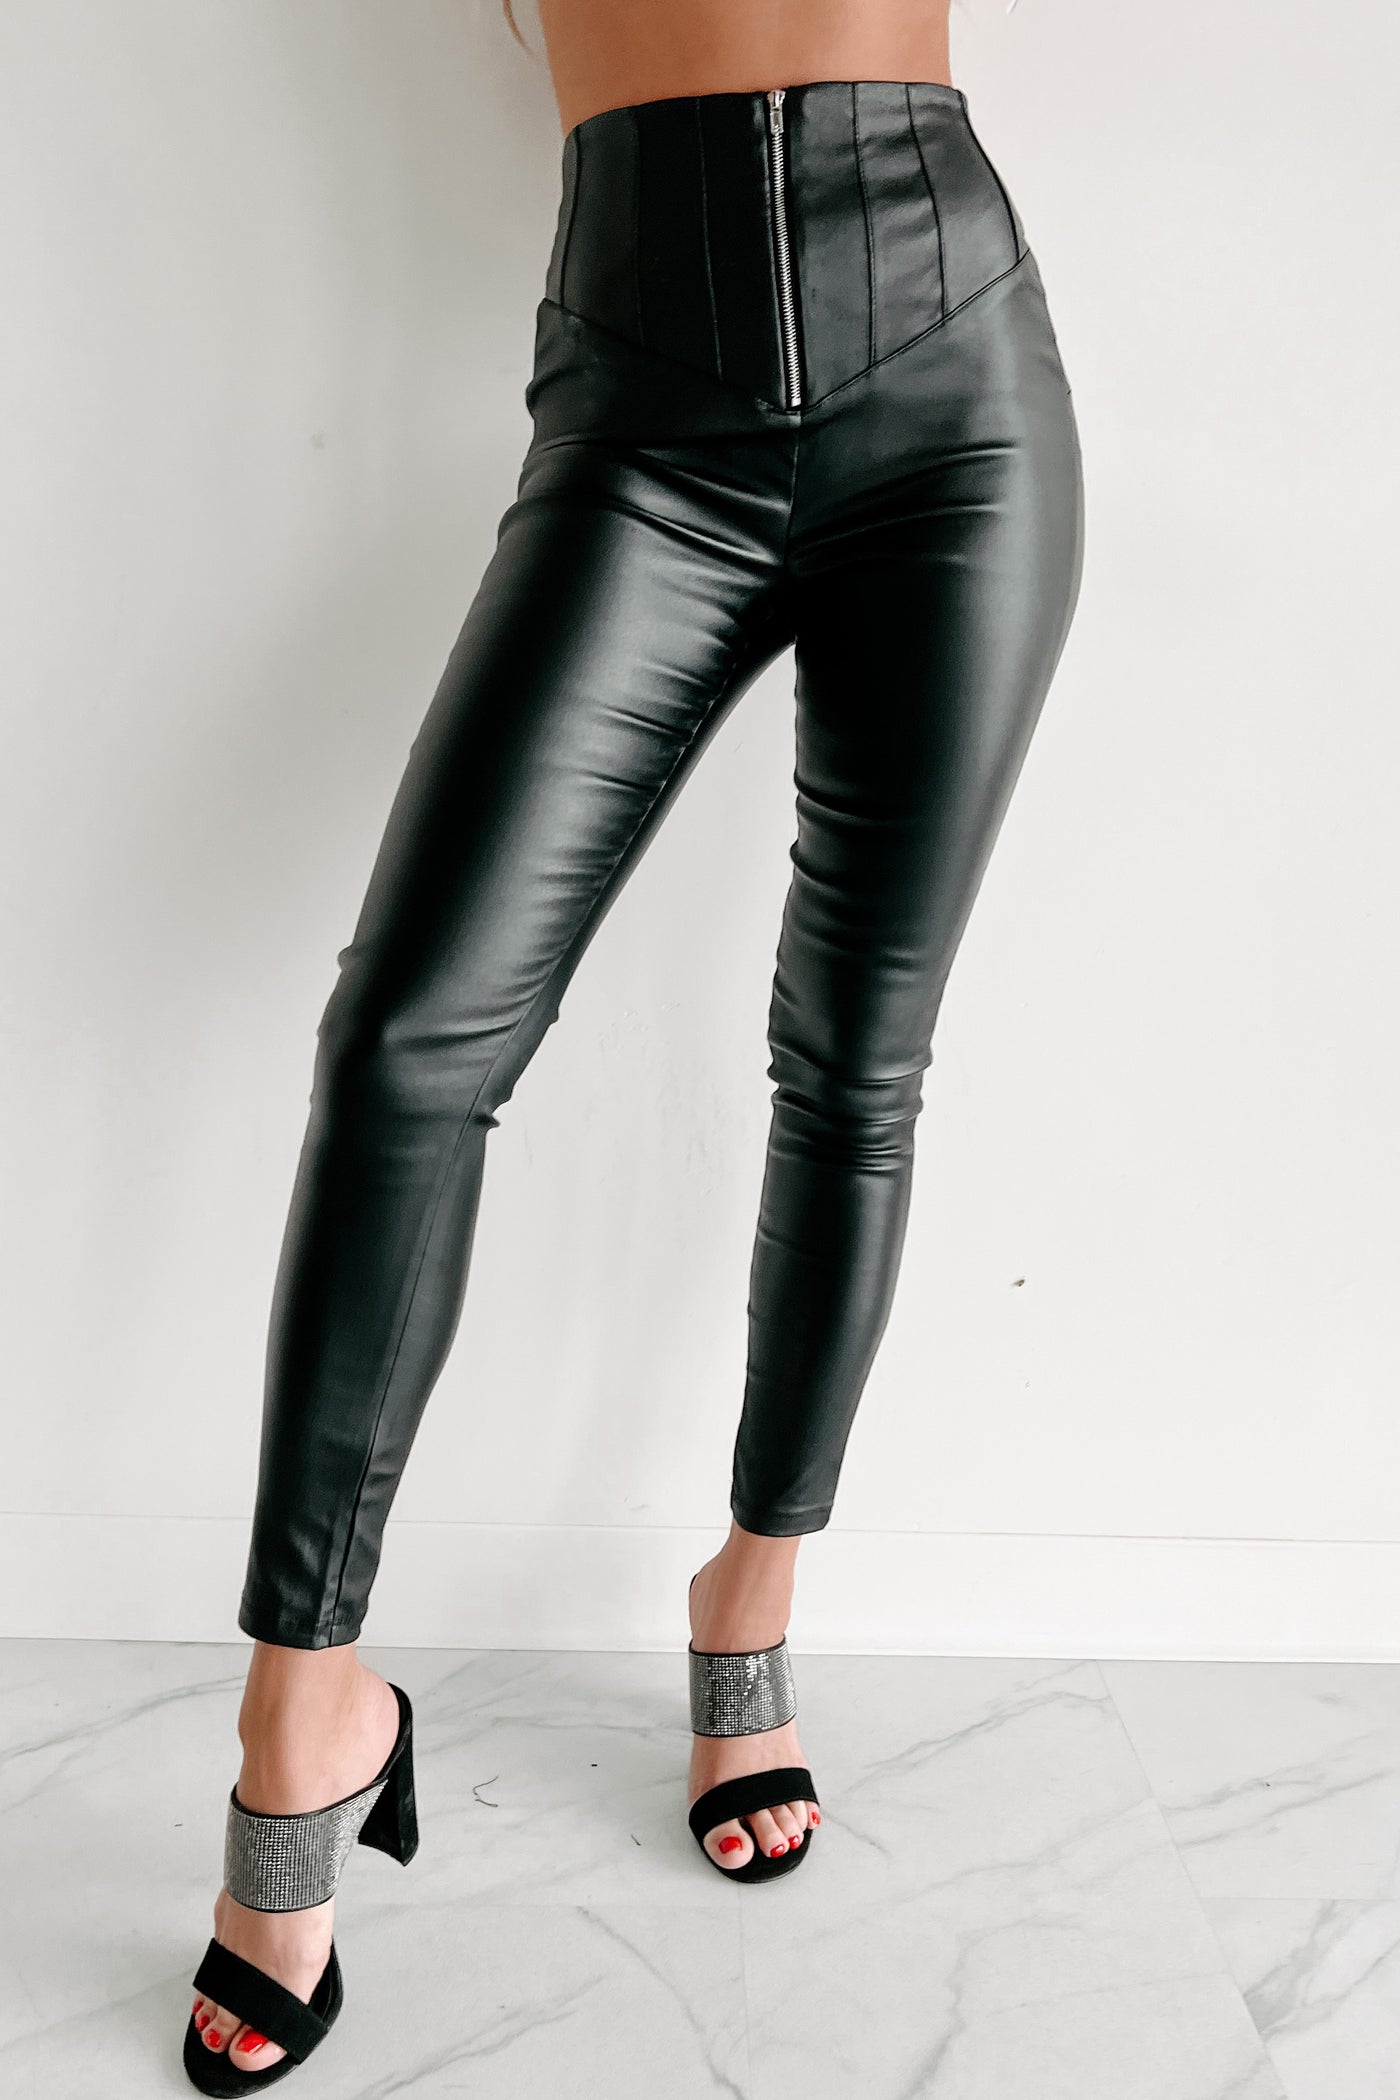 Hide Your Crazy Zipper Front Faux Leather Pants (Black) · NanaMacs